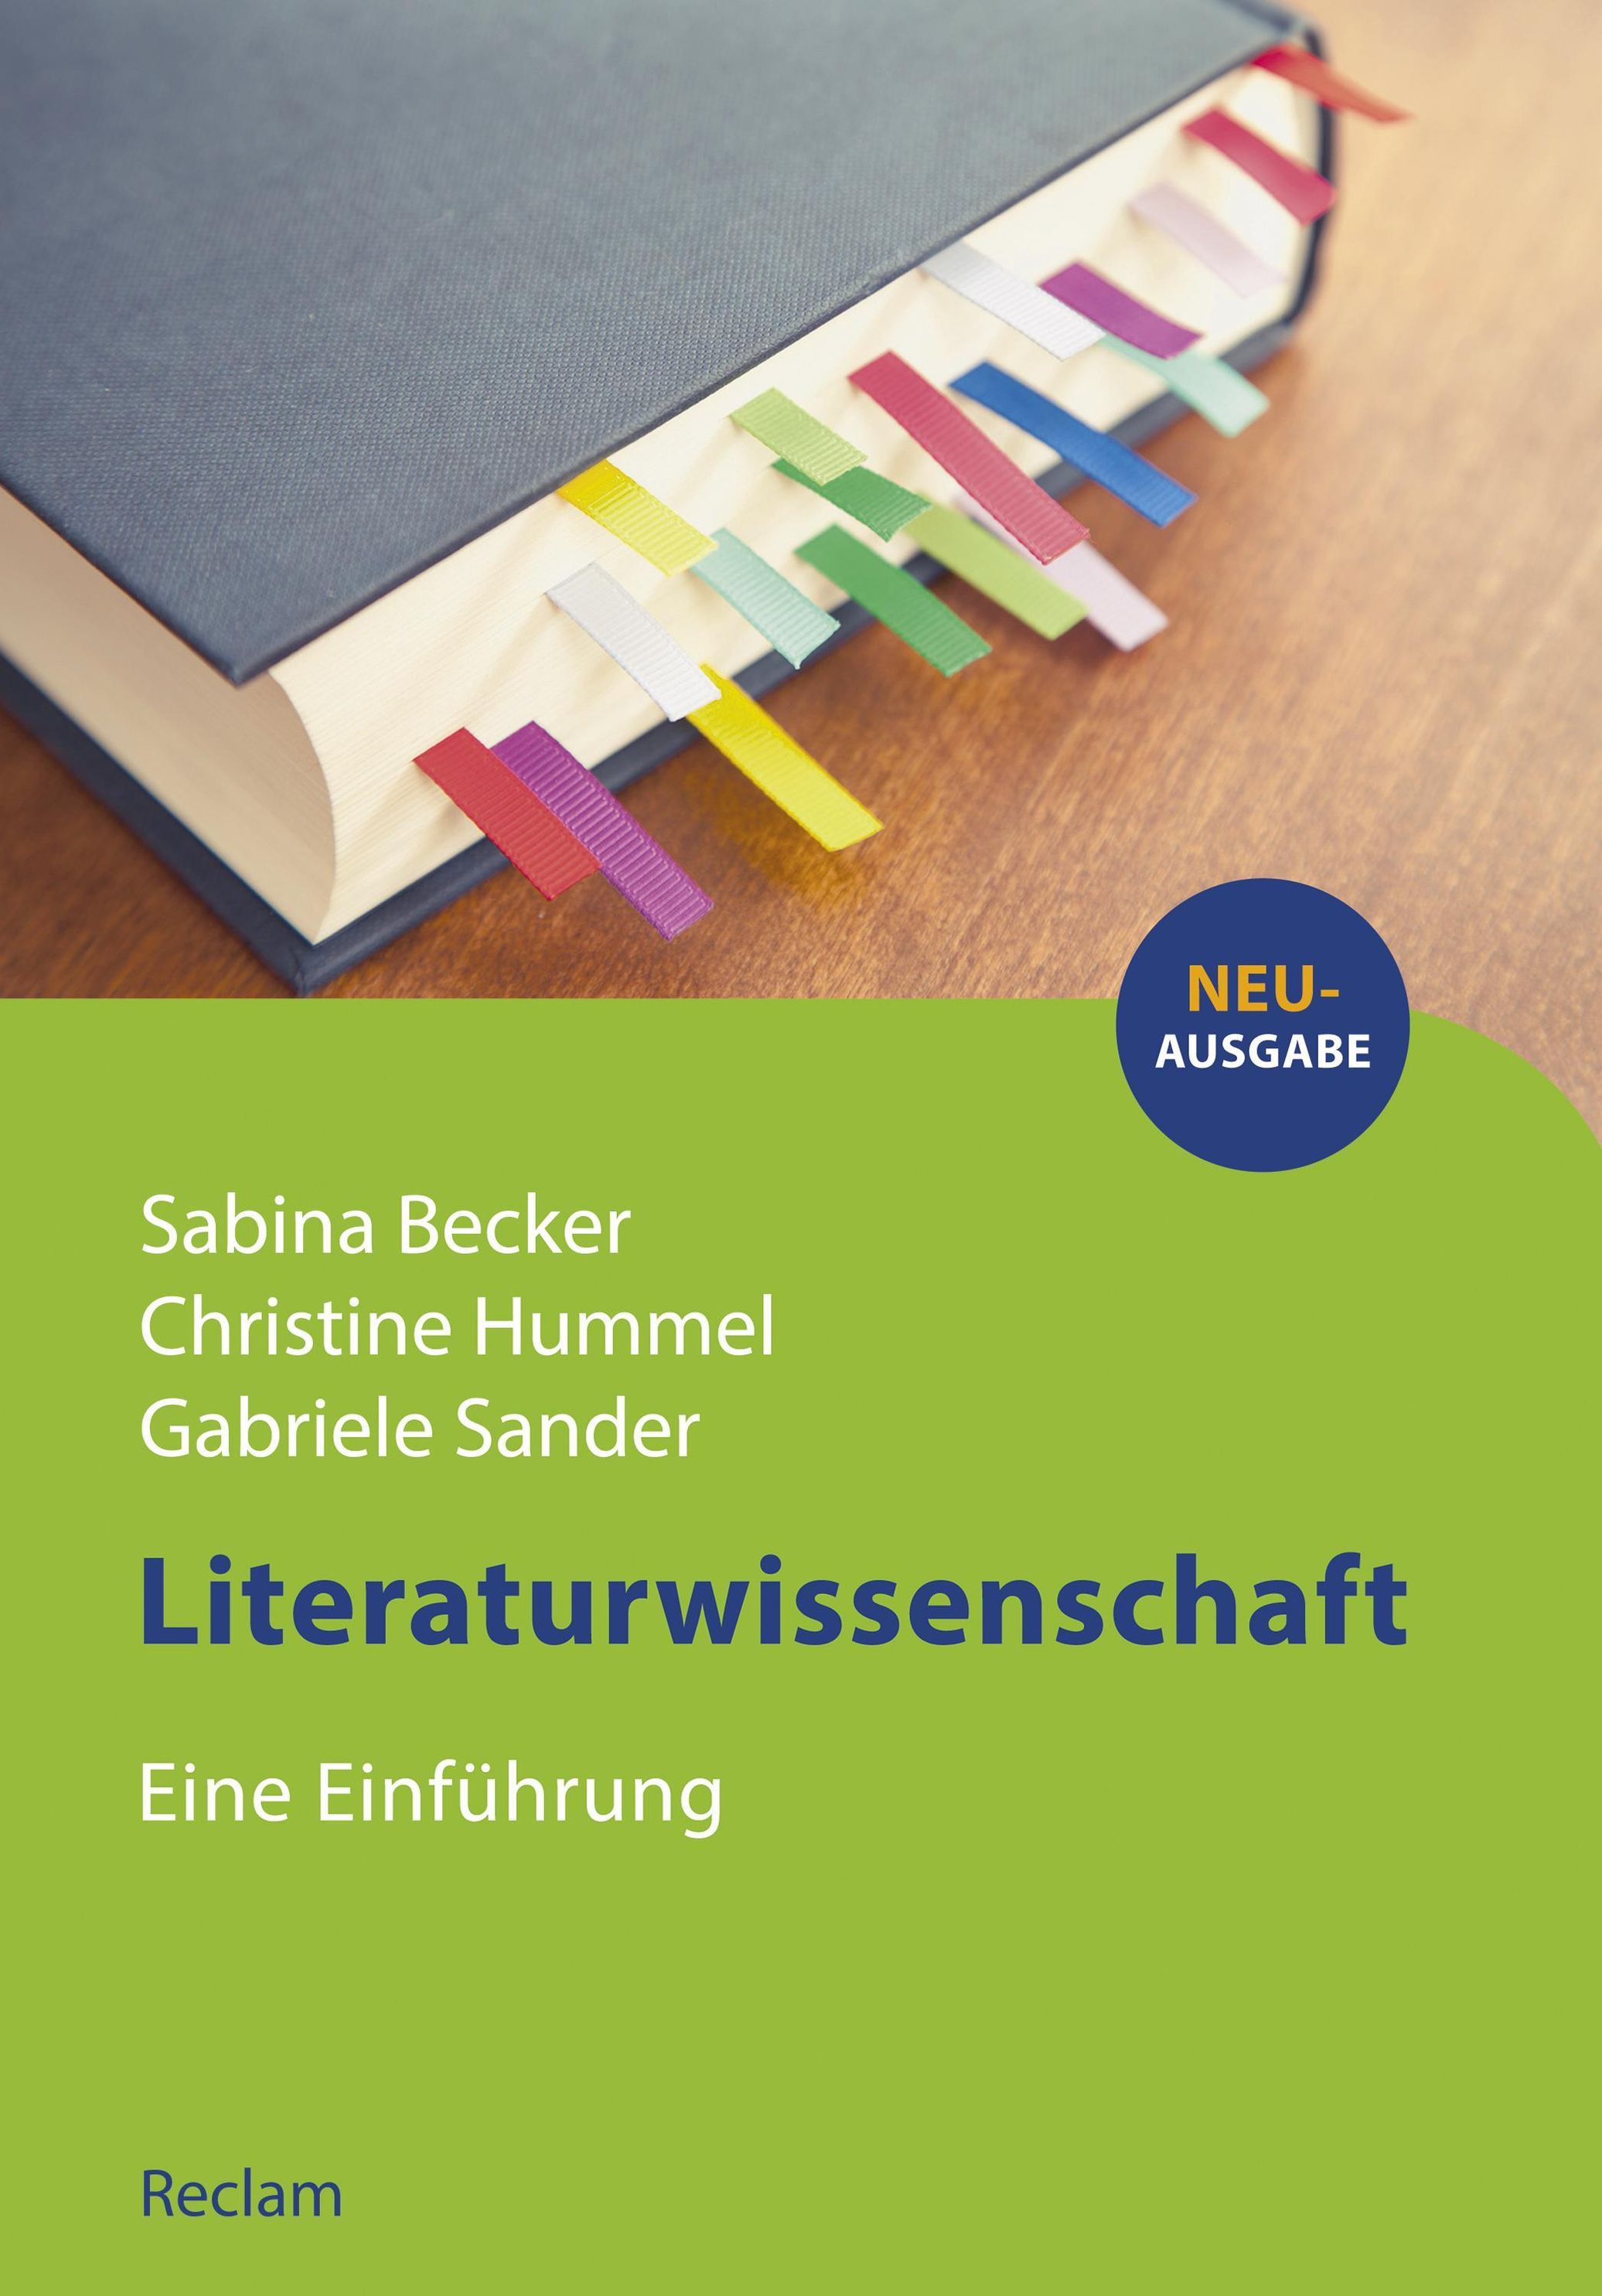 Reclams Studienbuch Germanistik: Literaturwissenschaft. Eine Einführung  ebook | Weltbild.de